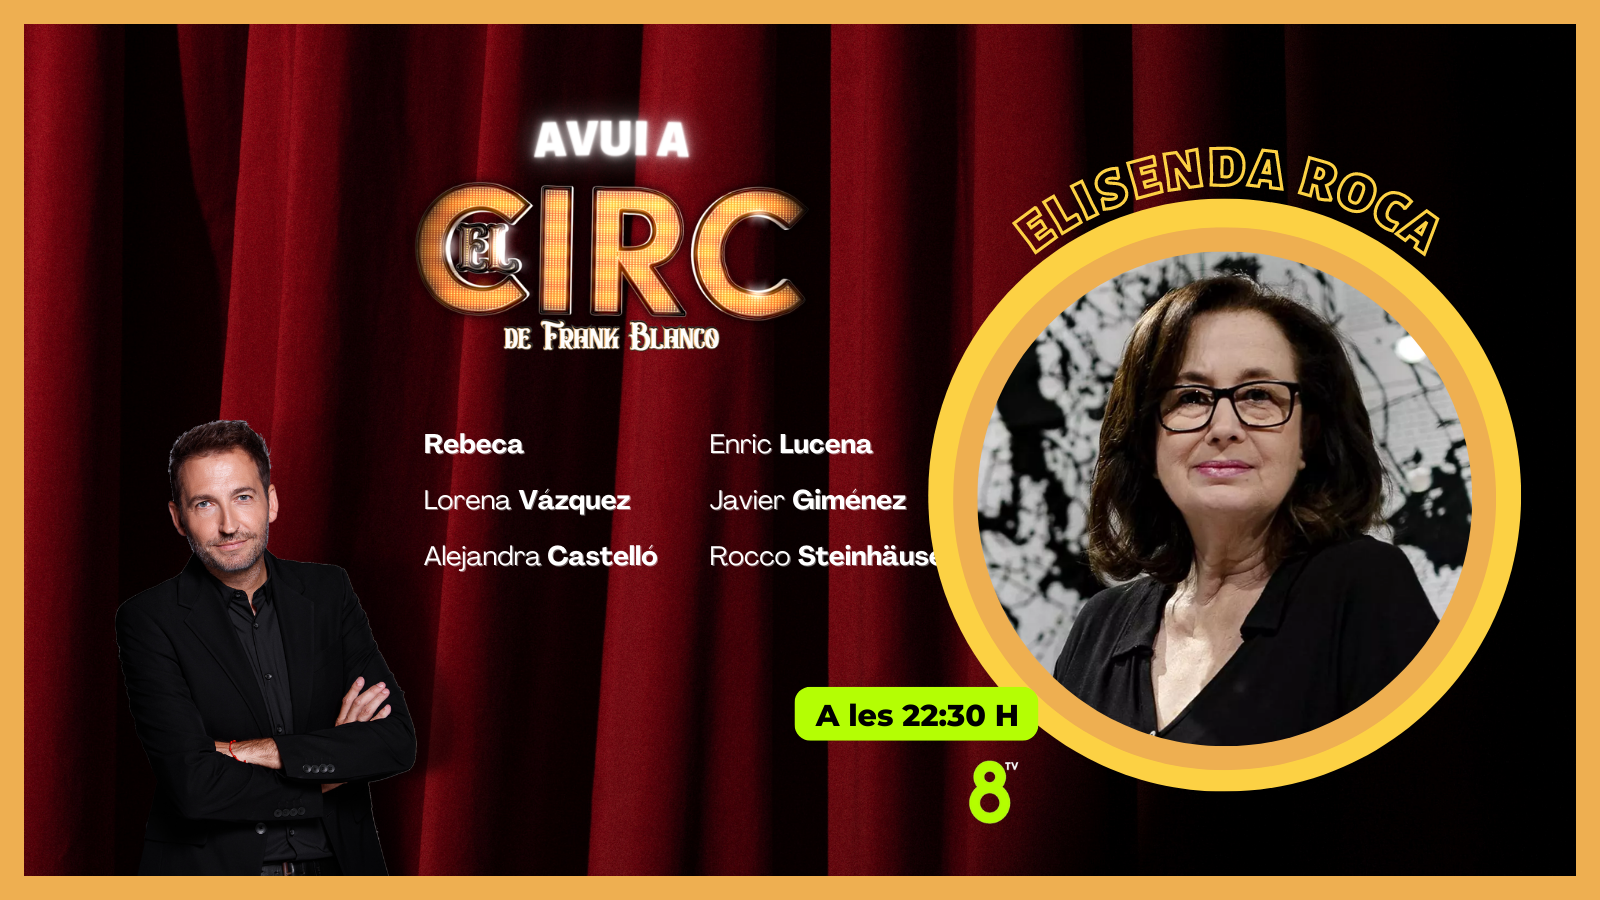 02/11/2022 - Elisenda Roca - El Circ - 8tv